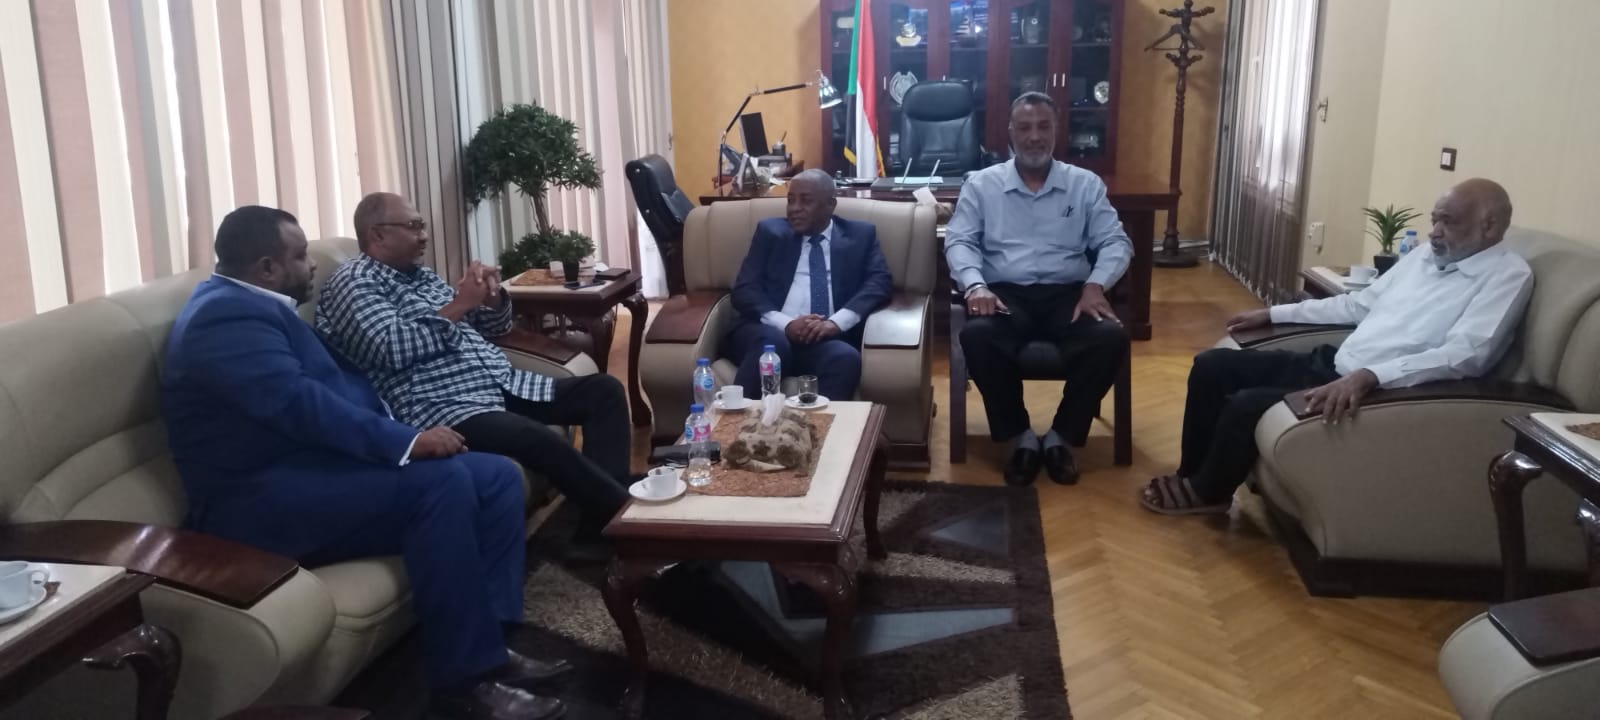 وفدجمعية الصداقة السودانية المصرية يلتقي السفير السوداني والمستشار الثقافي